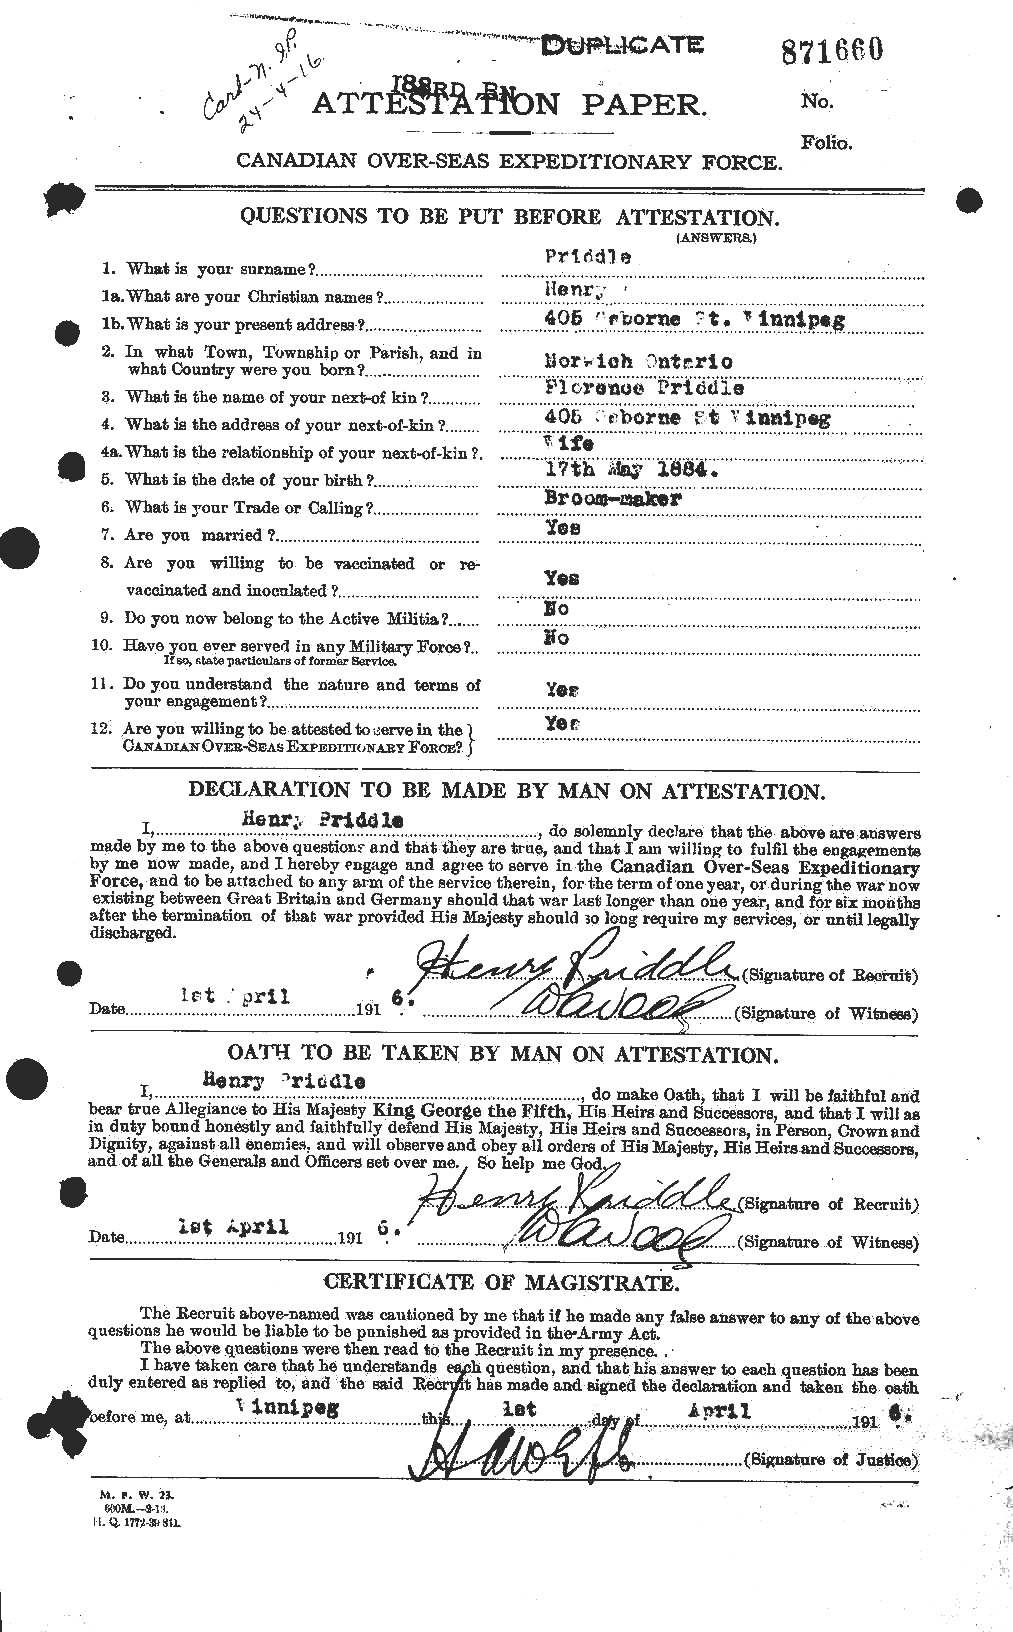 Dossiers du Personnel de la Première Guerre mondiale - CEC 587490a